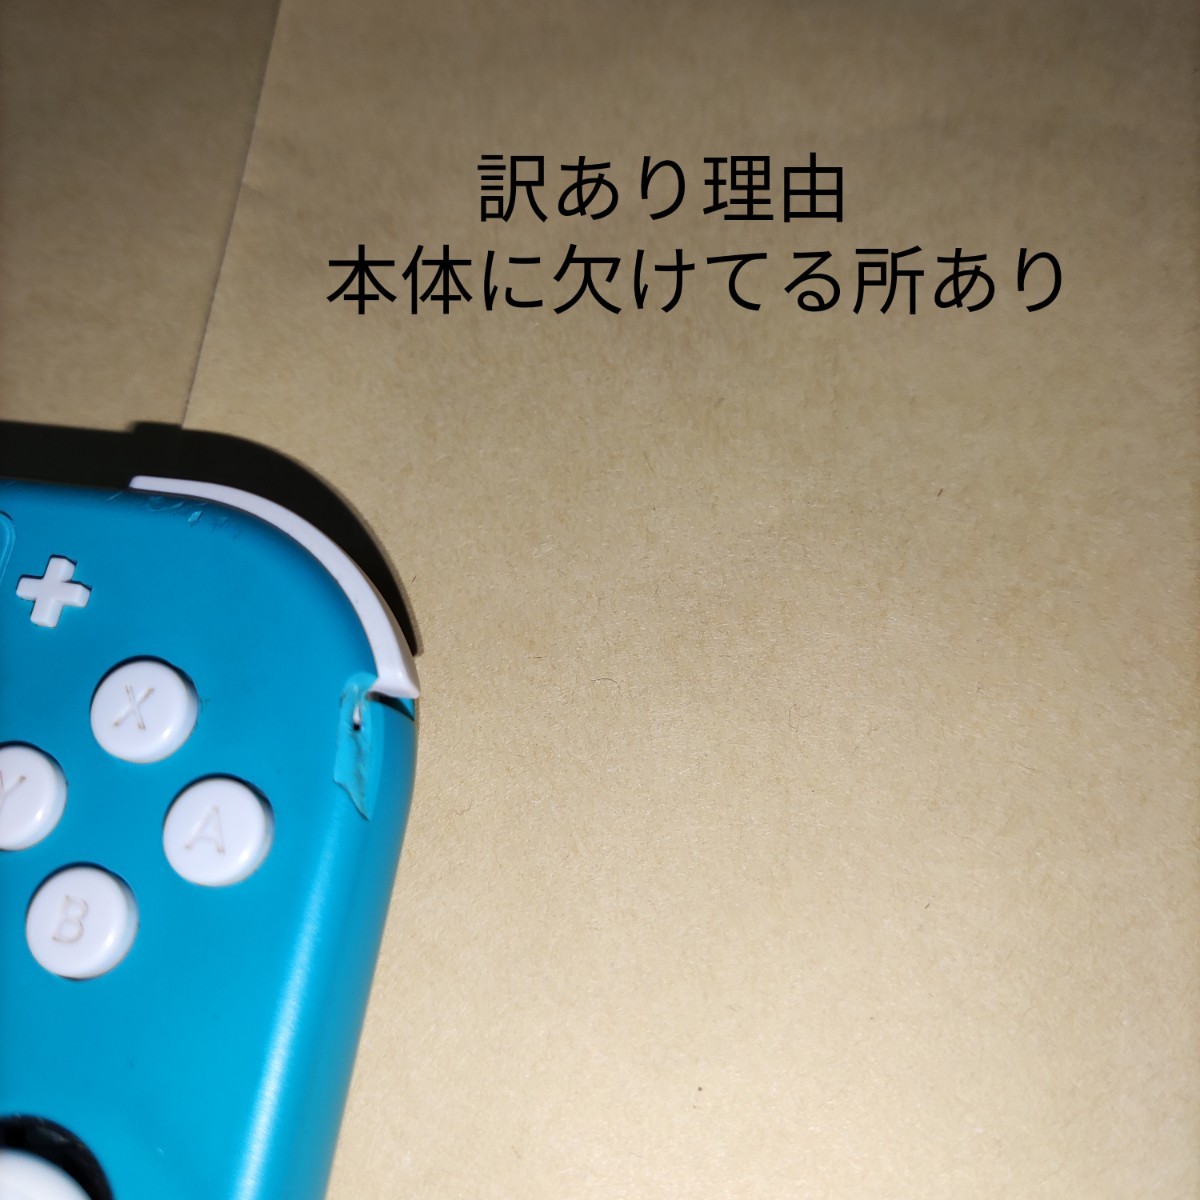 訳あり品 Nintendo Switch Lite ターコイズ 本体のみ 2020年製